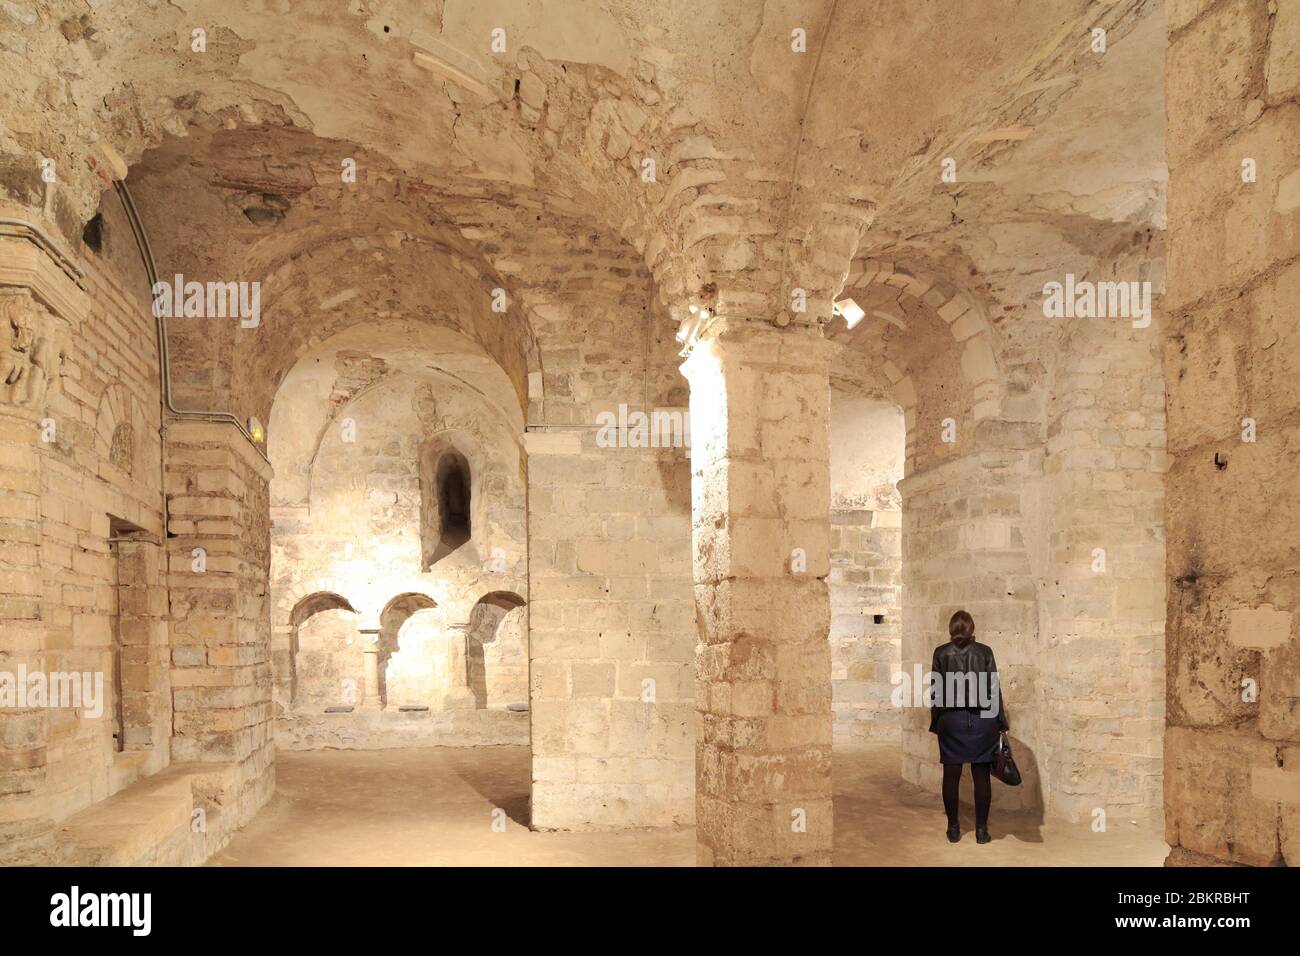 France, Loiret, Orléans, collégiale de Saint Aignan, crypte du XIe siècle Banque D'Images